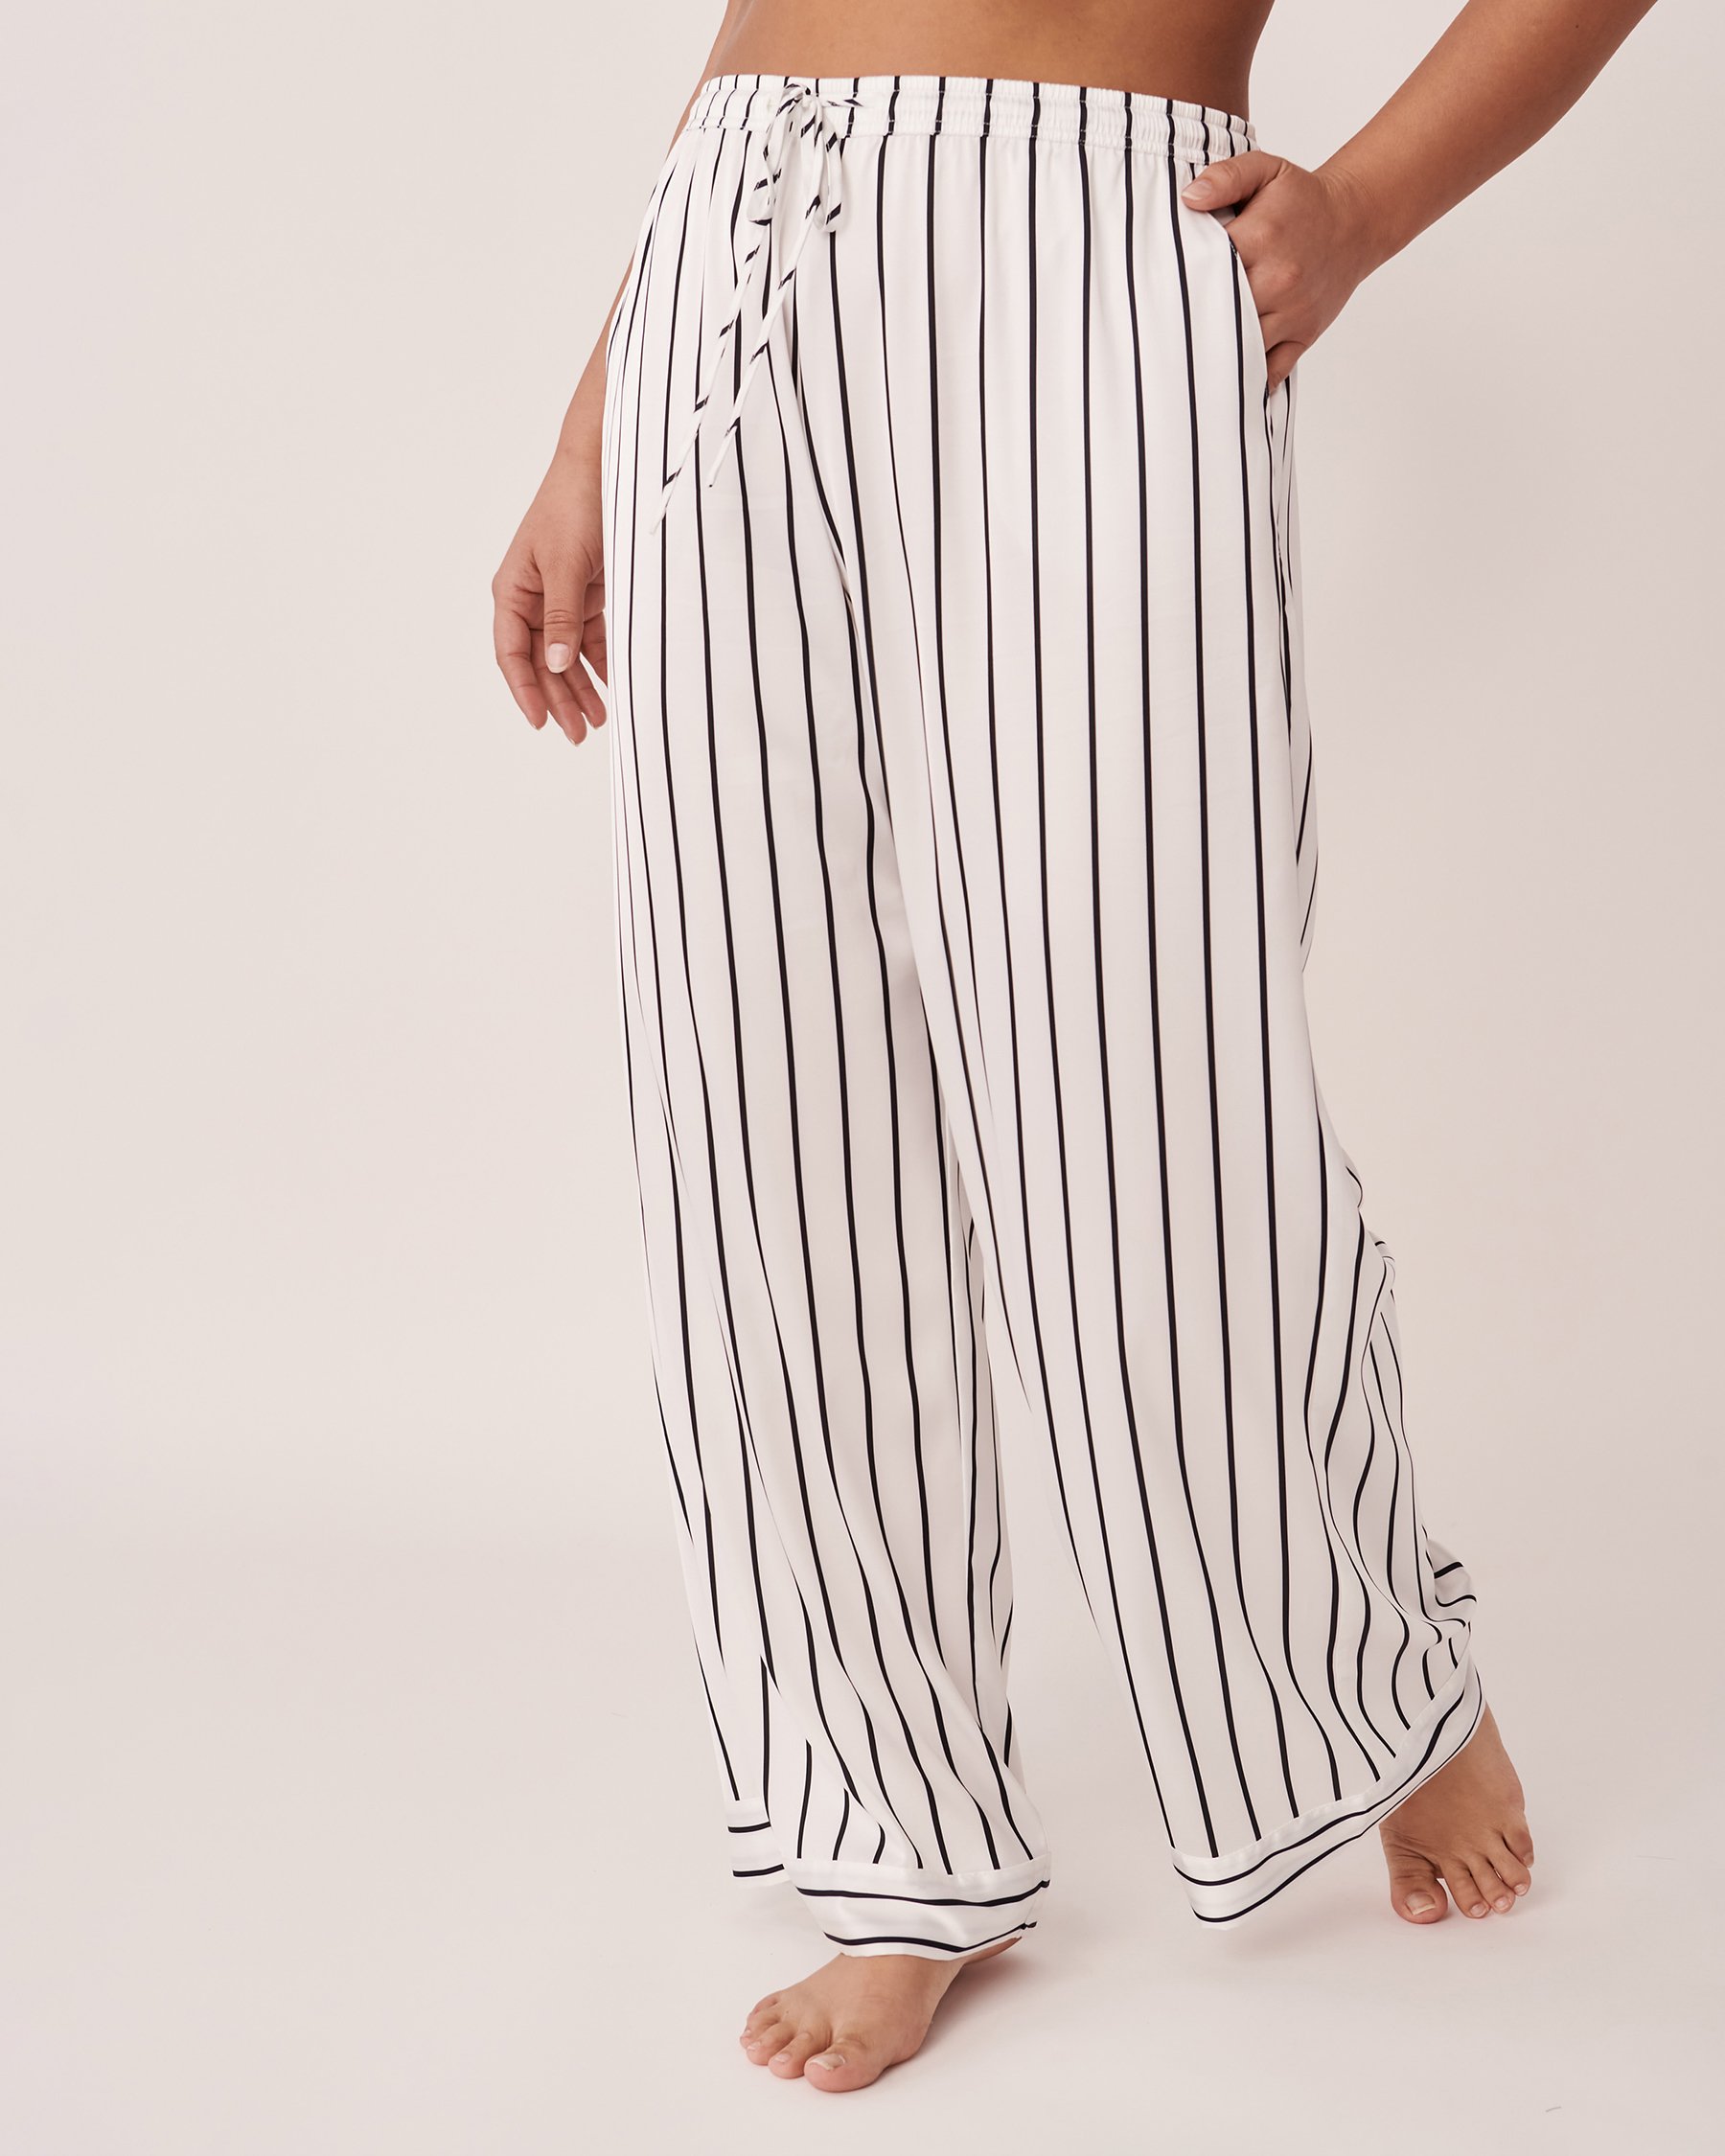 LA VIE EN ROSE Striped Satin Pants Black and white stripe 60200058 - View1